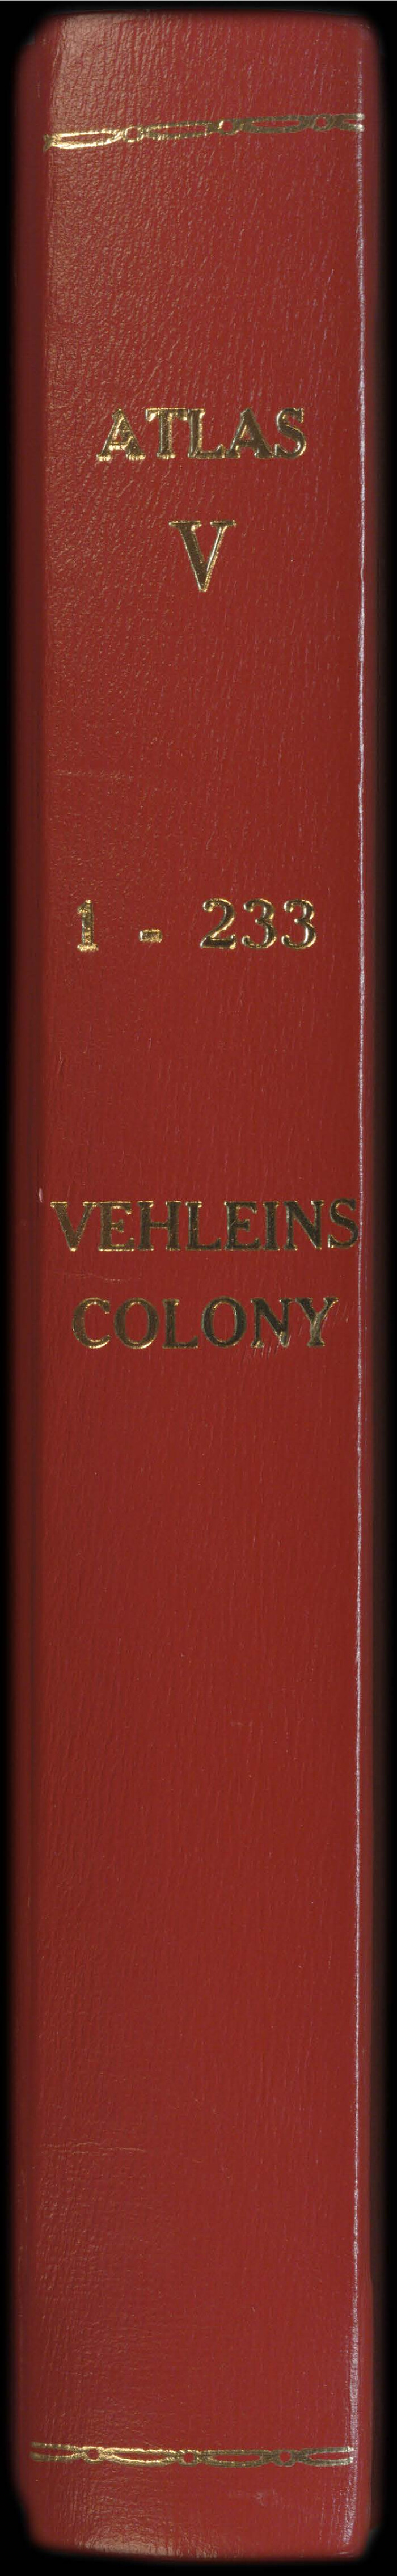 94539, Atlas V, 1-233: Vehlein's Colony, Historical Volumes